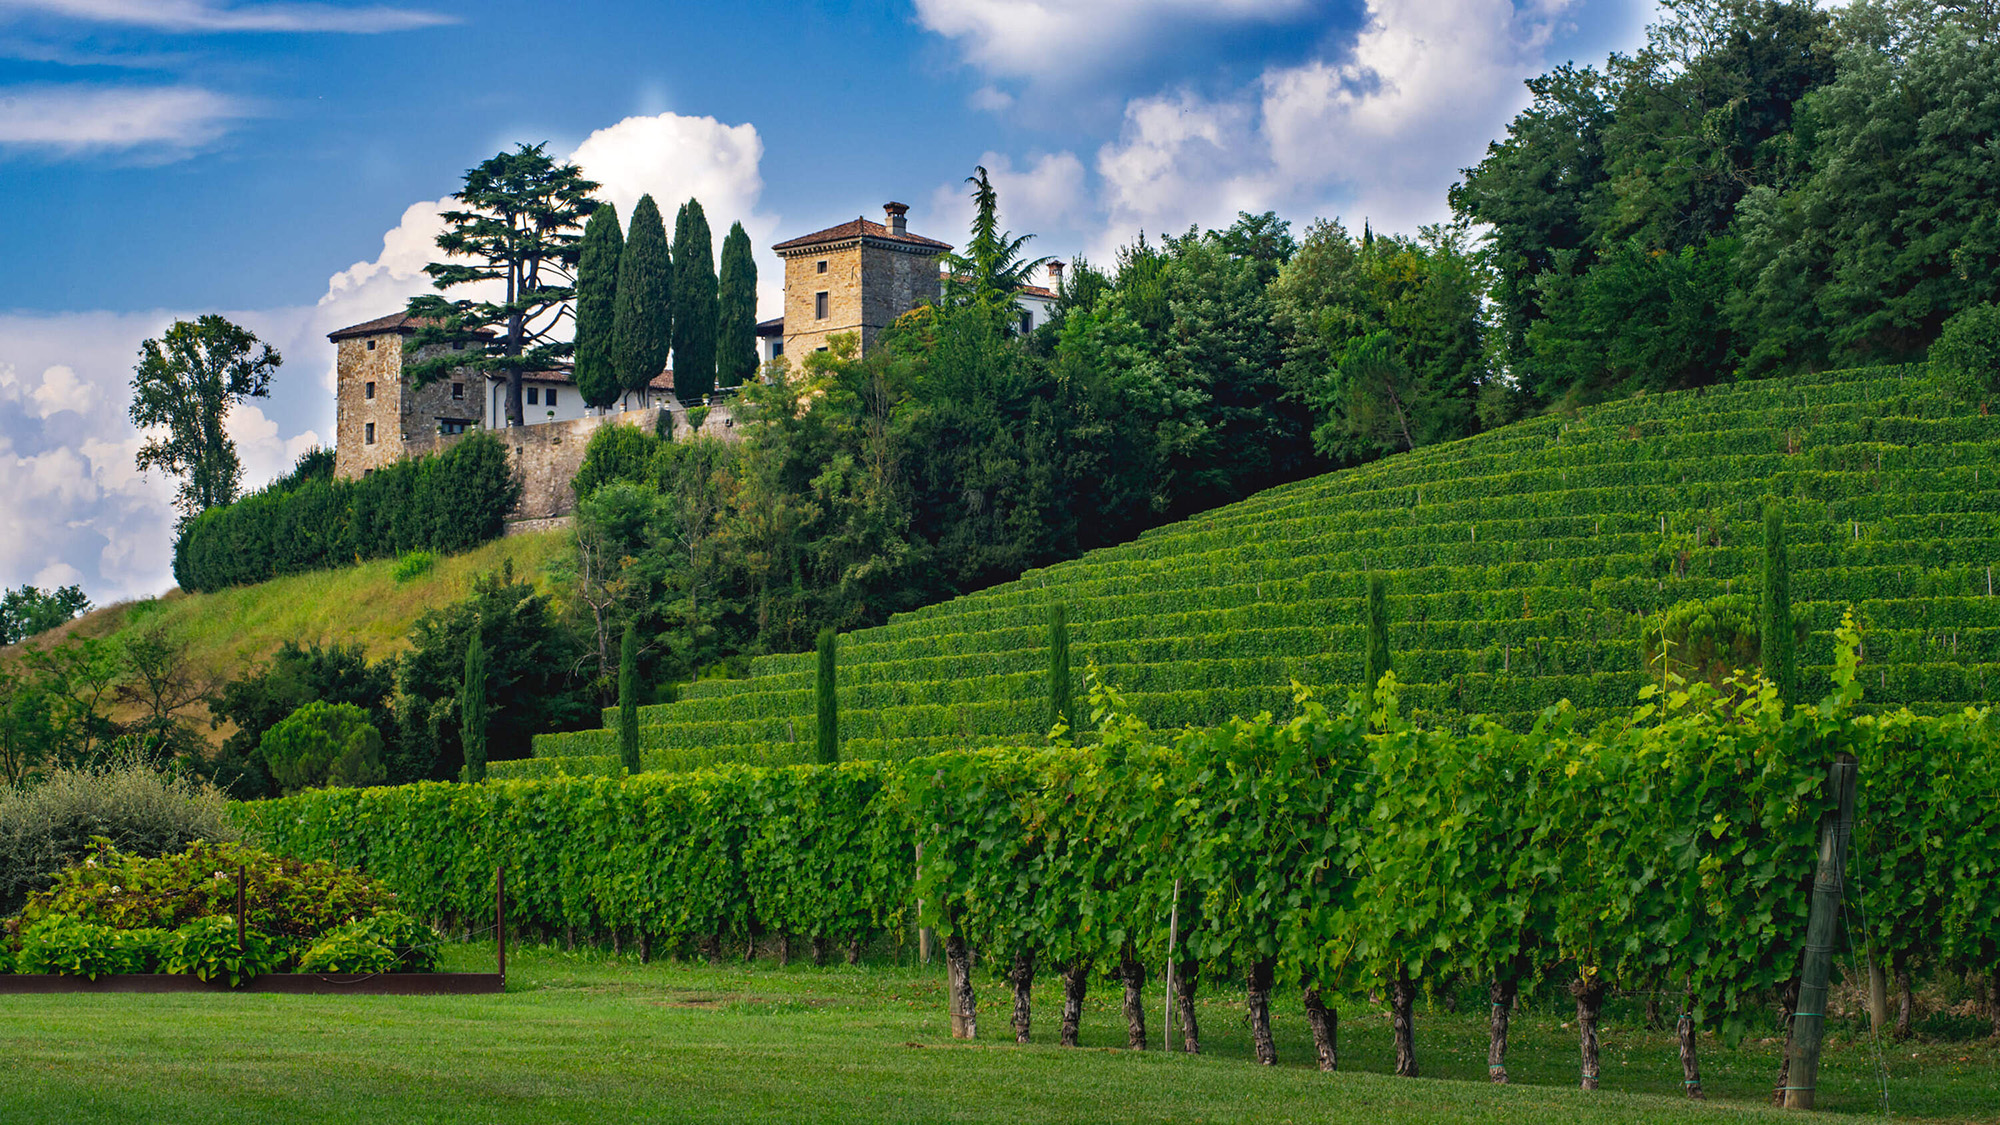 Lush green vineyards set on a hillside beside a brick built Italian villa.